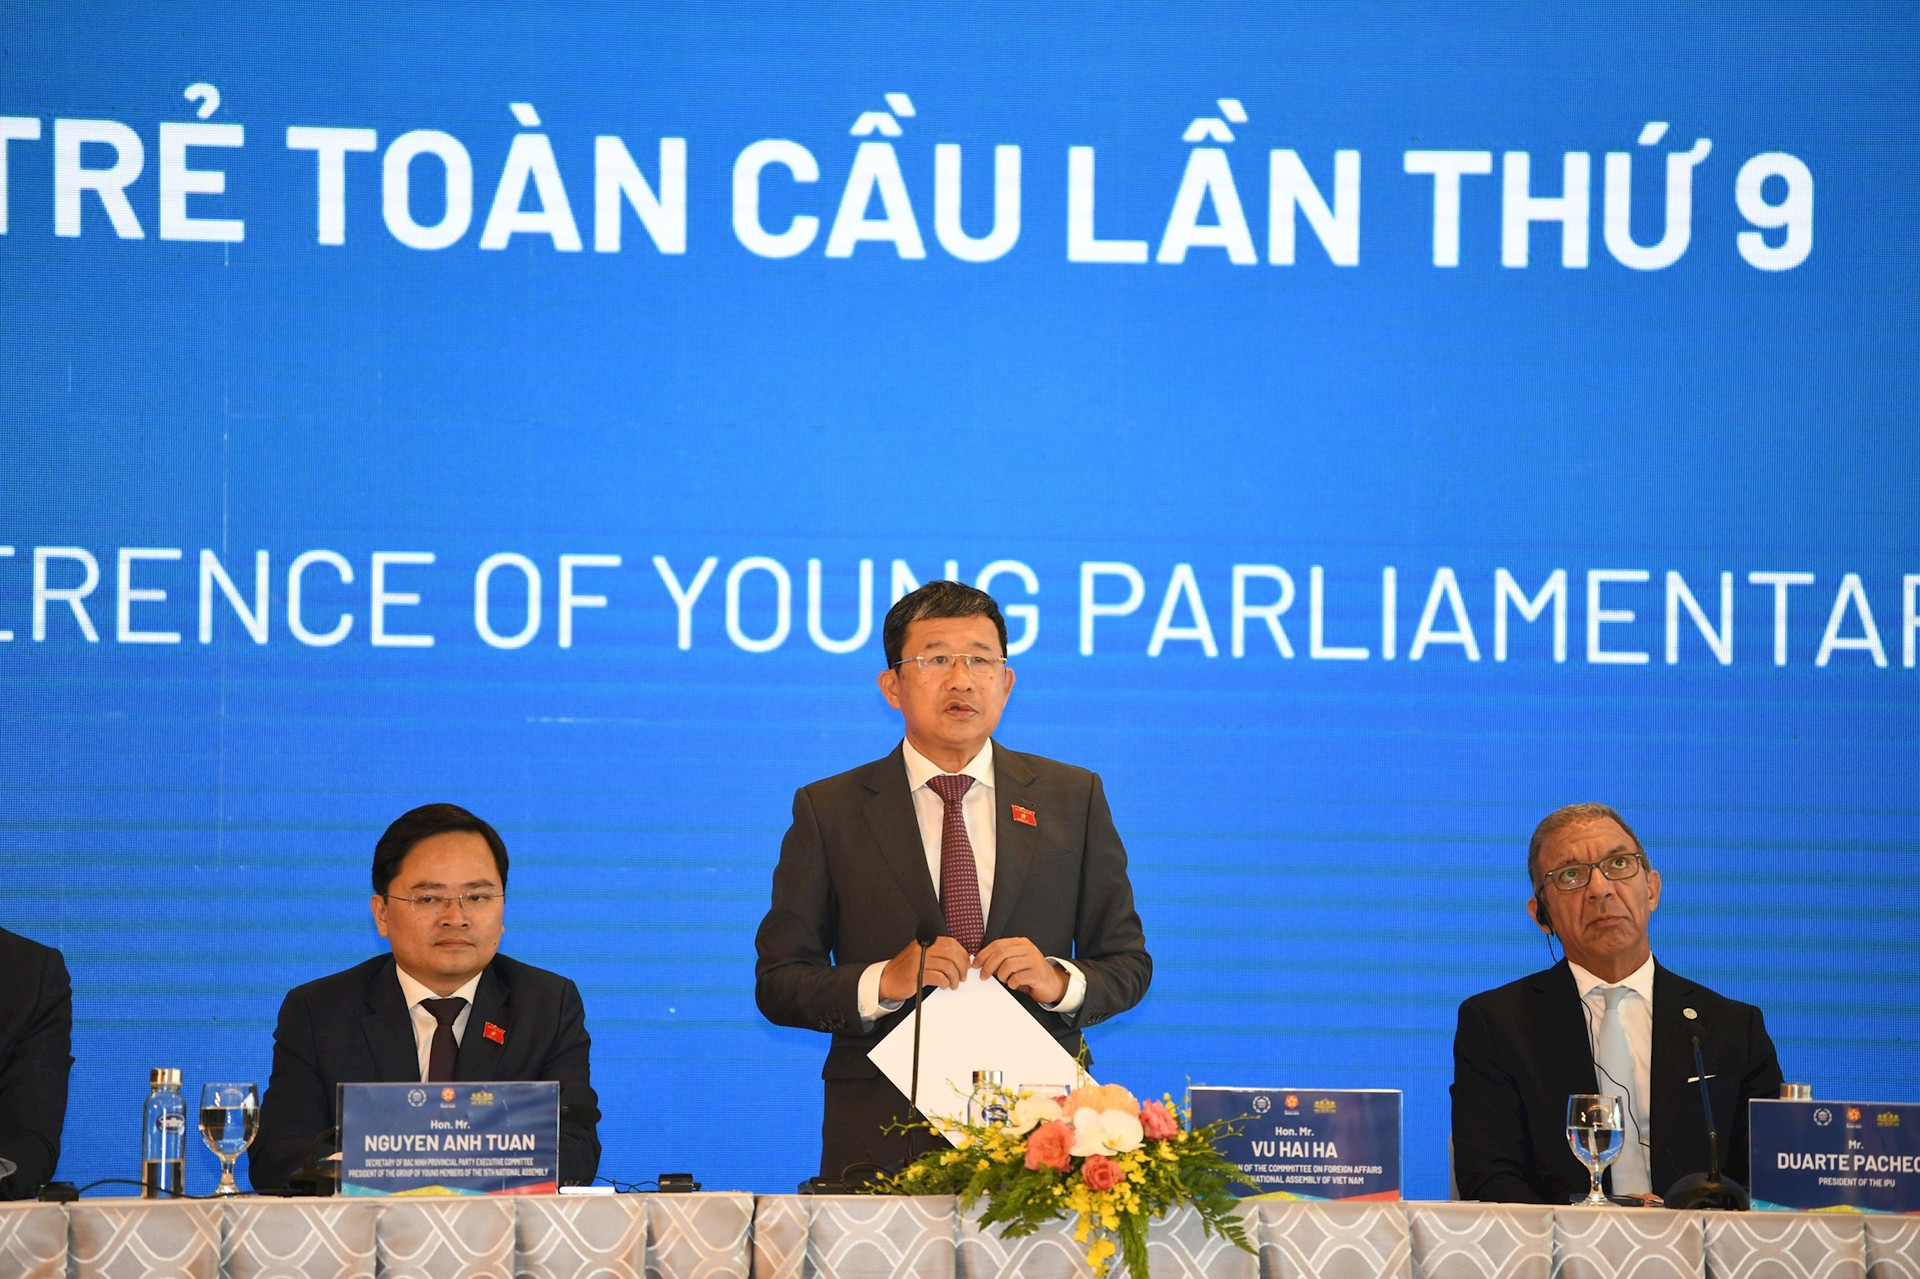 Hội nghị Nghị sĩ trẻ do Việt Nam tổ chức đã “phá nhiều kỷ lục” - Ảnh 2.